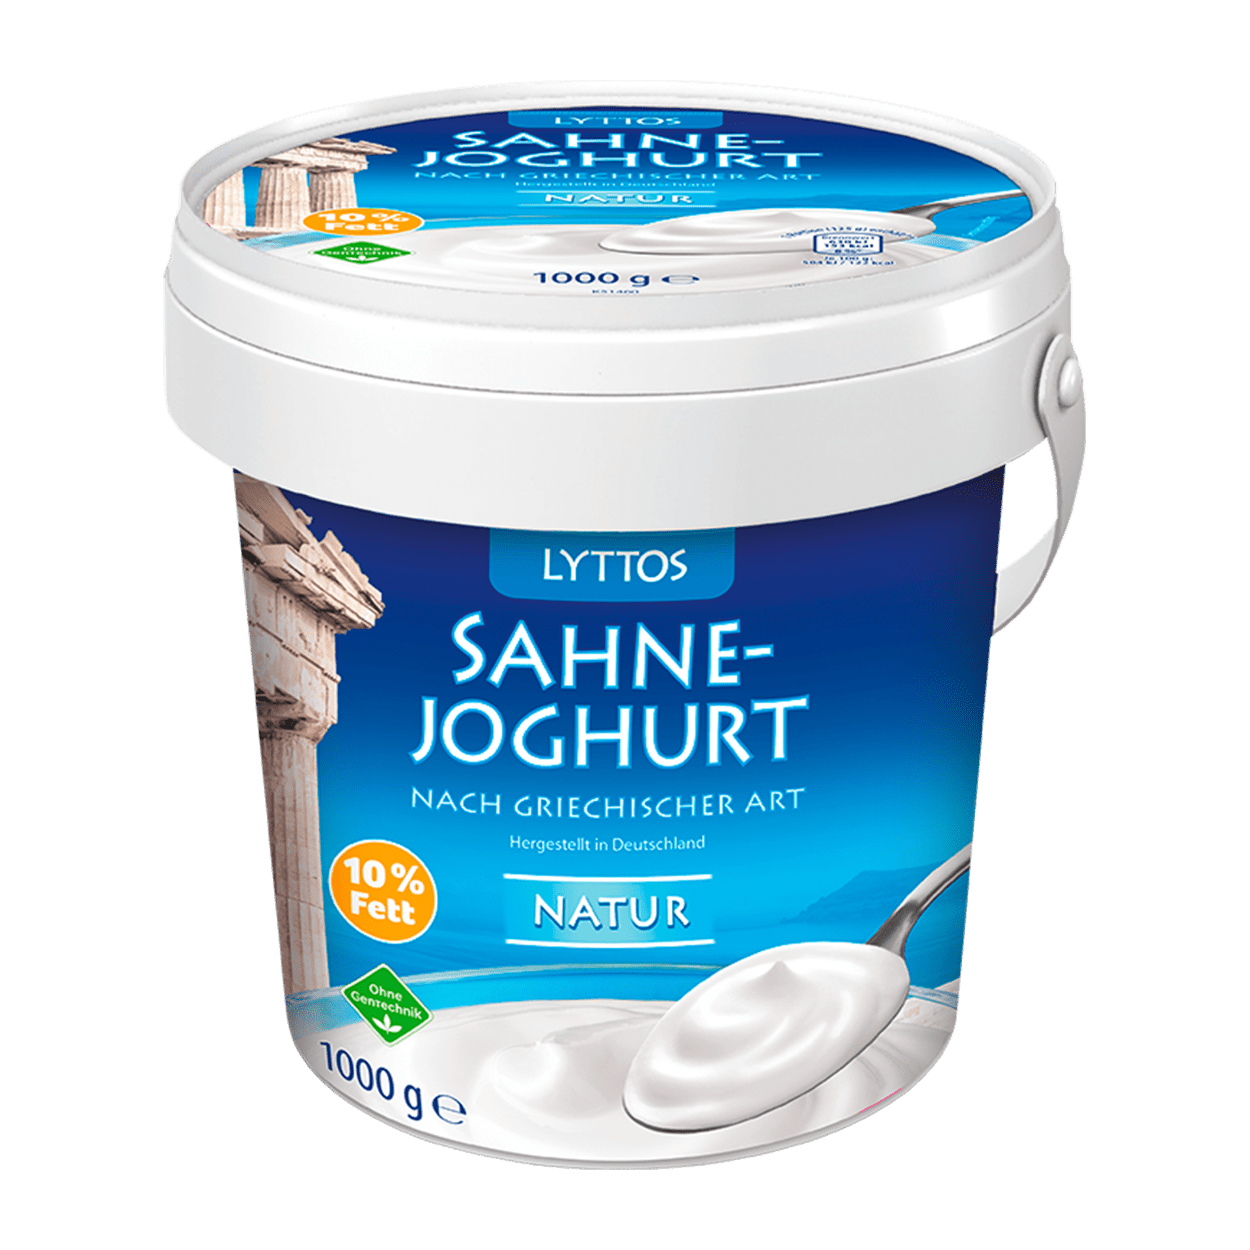 LYTTOS Joghurt nach griechischer Art günstig bei ALDI Nord